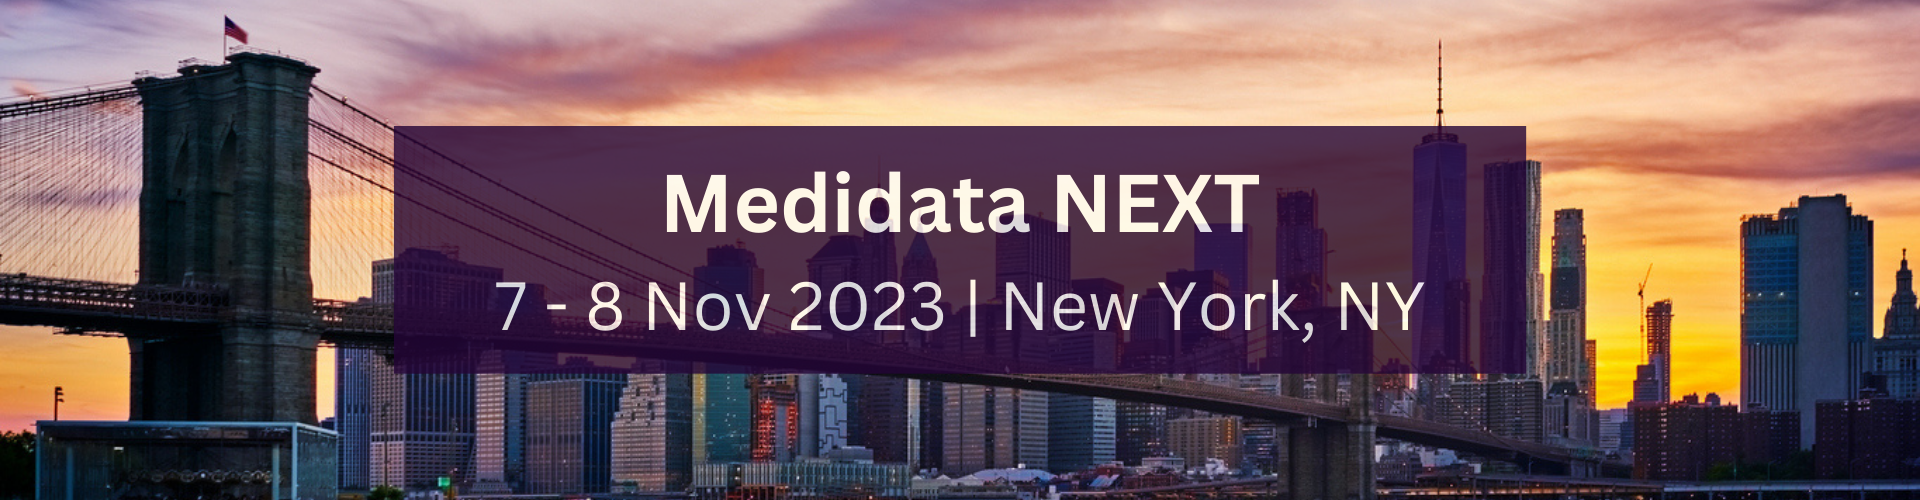 Medidata NEXT New York 7 - 8 Nov 2023  New York, NY (1)